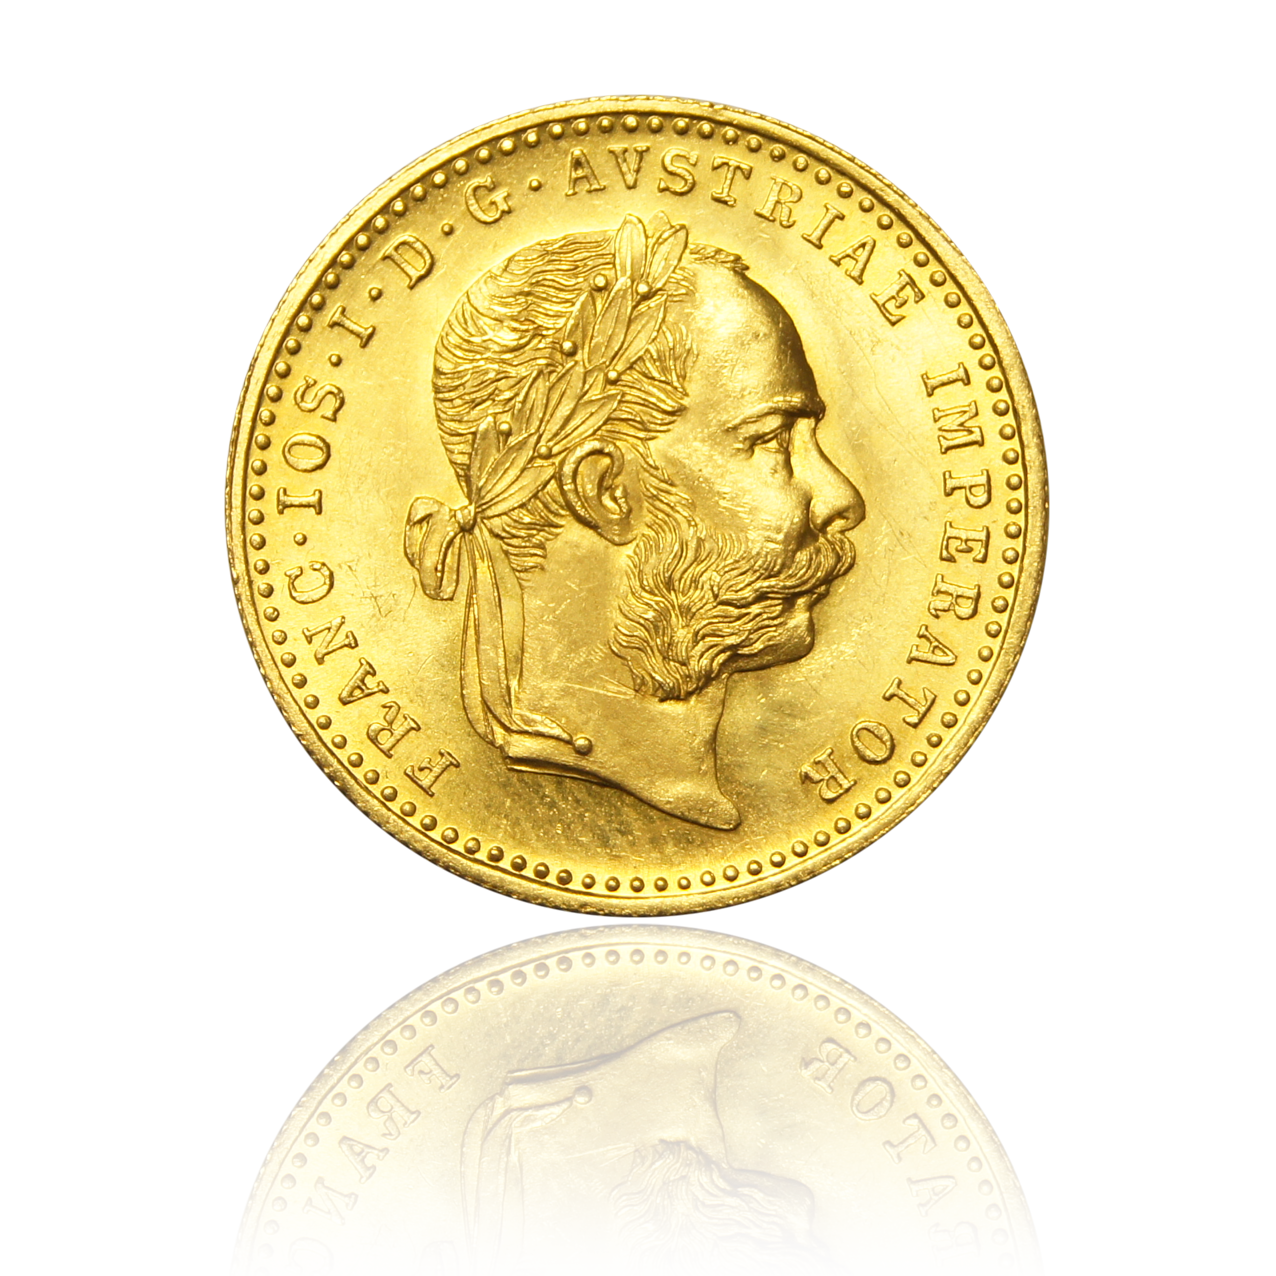 1 ducat - Austria 3,44 g gold coin